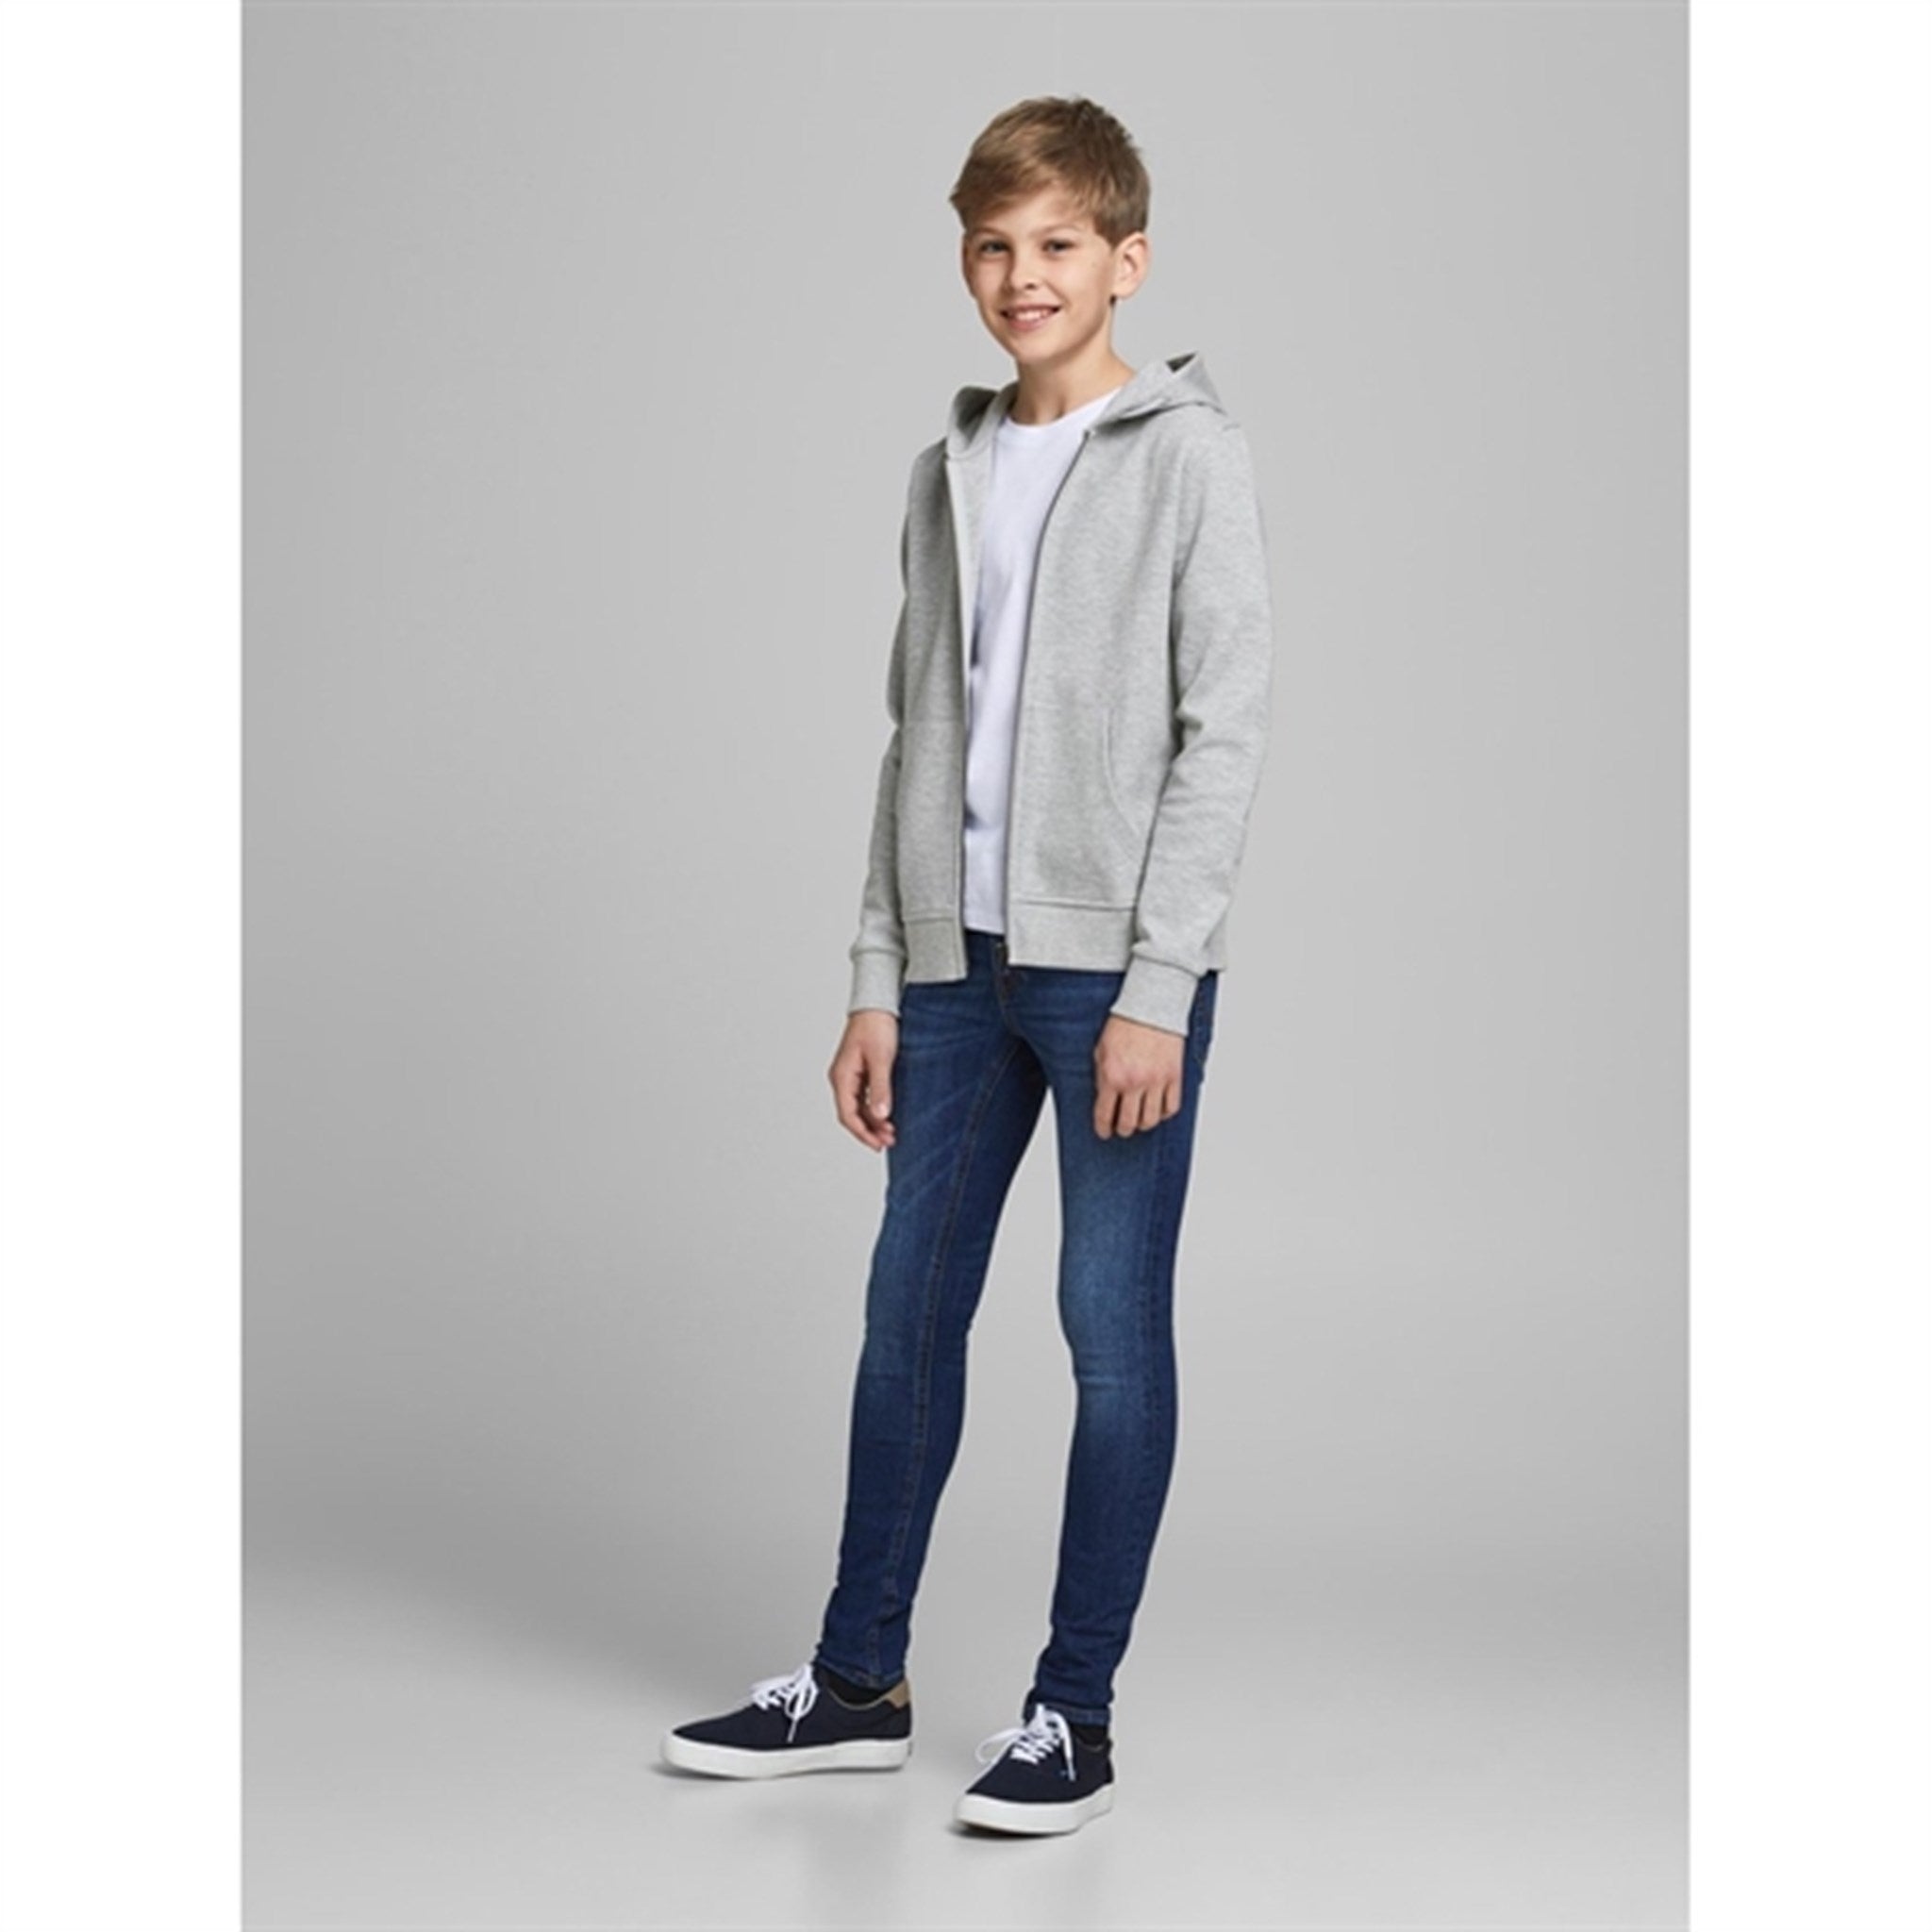 Jack & Jones Junior Light Grey Melange Basic Sweatshirt with Zipper Noos 4